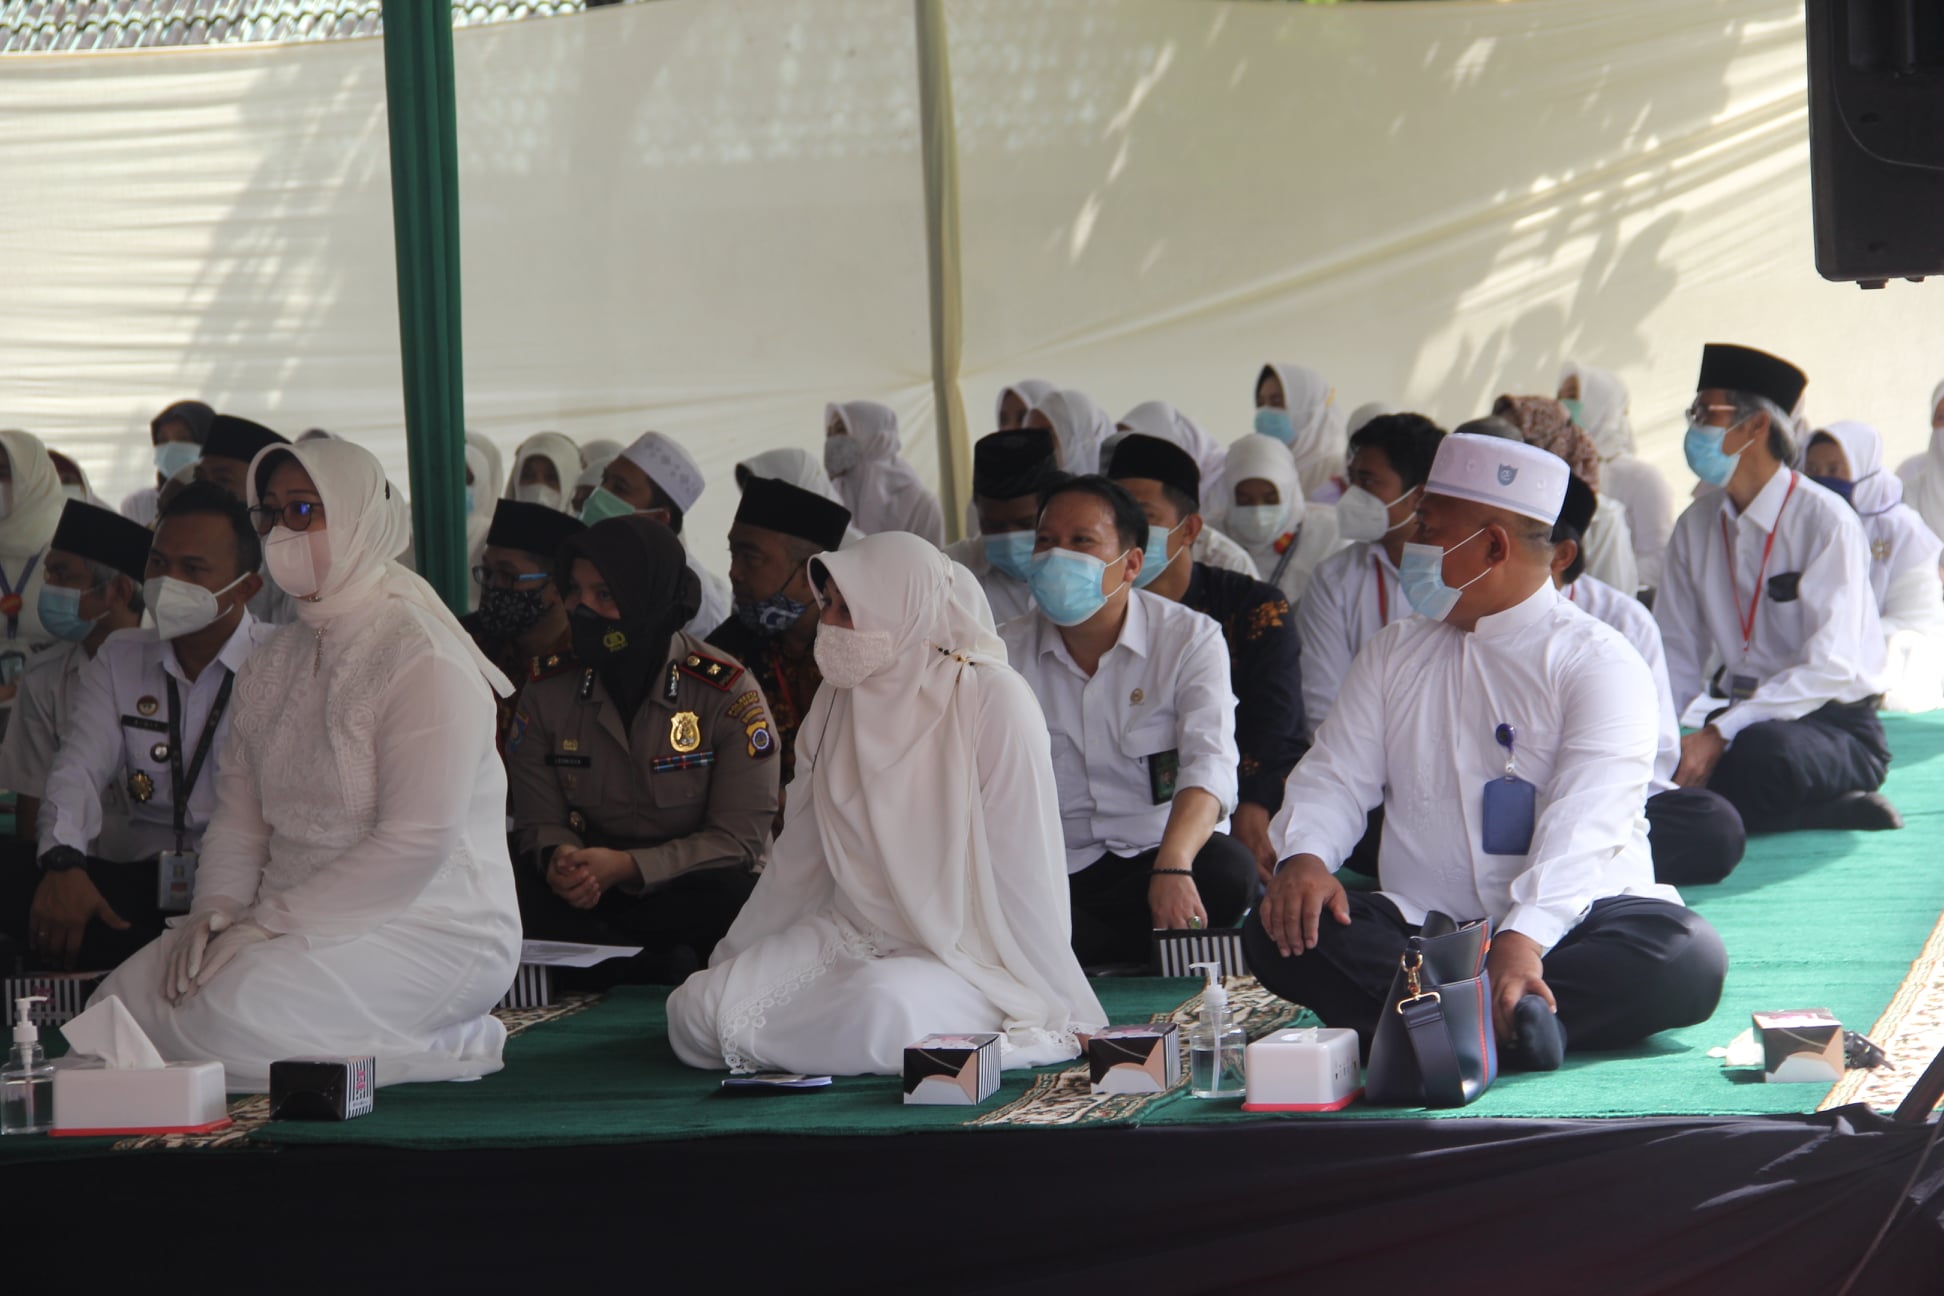 Wakil Ketua Pengadilan Negeri Yogyakarta Menghadiri Wisuda Santri Warga Binaan Pemasyarakatan dan Zikir Akbar Asmaul Husna